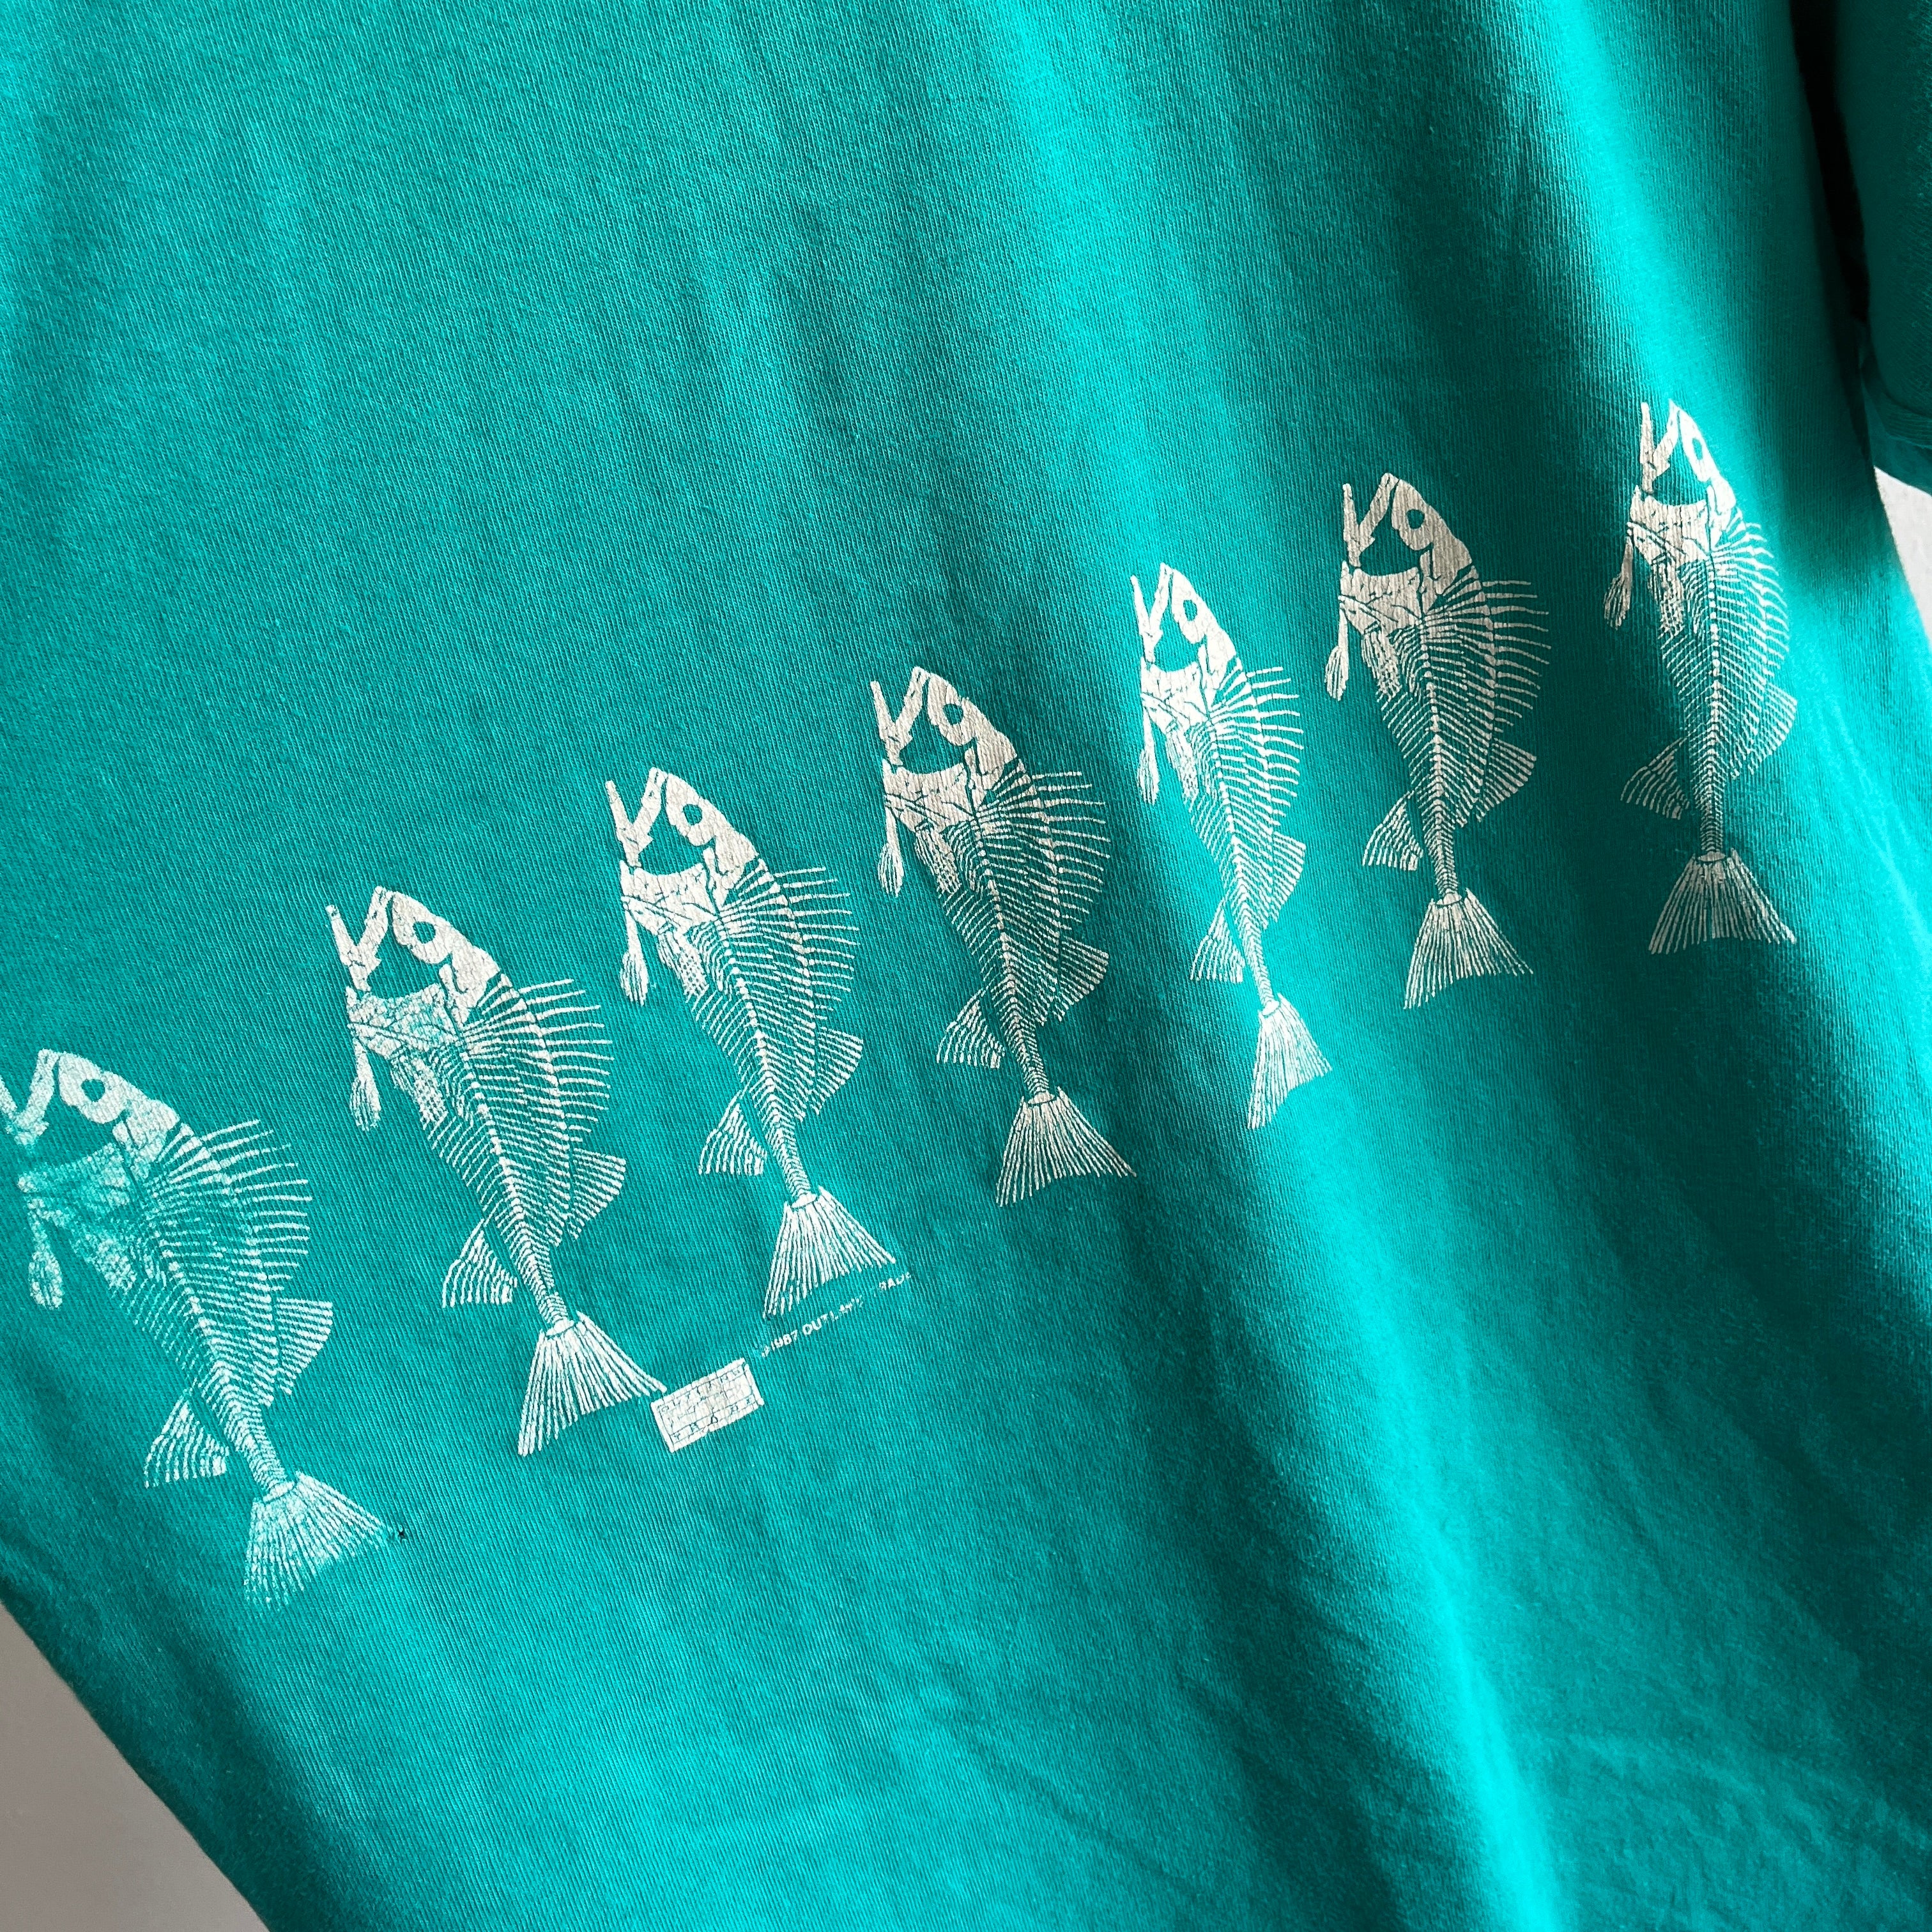 1987 Fish Bone Wrap Around Graphic T-Shirt